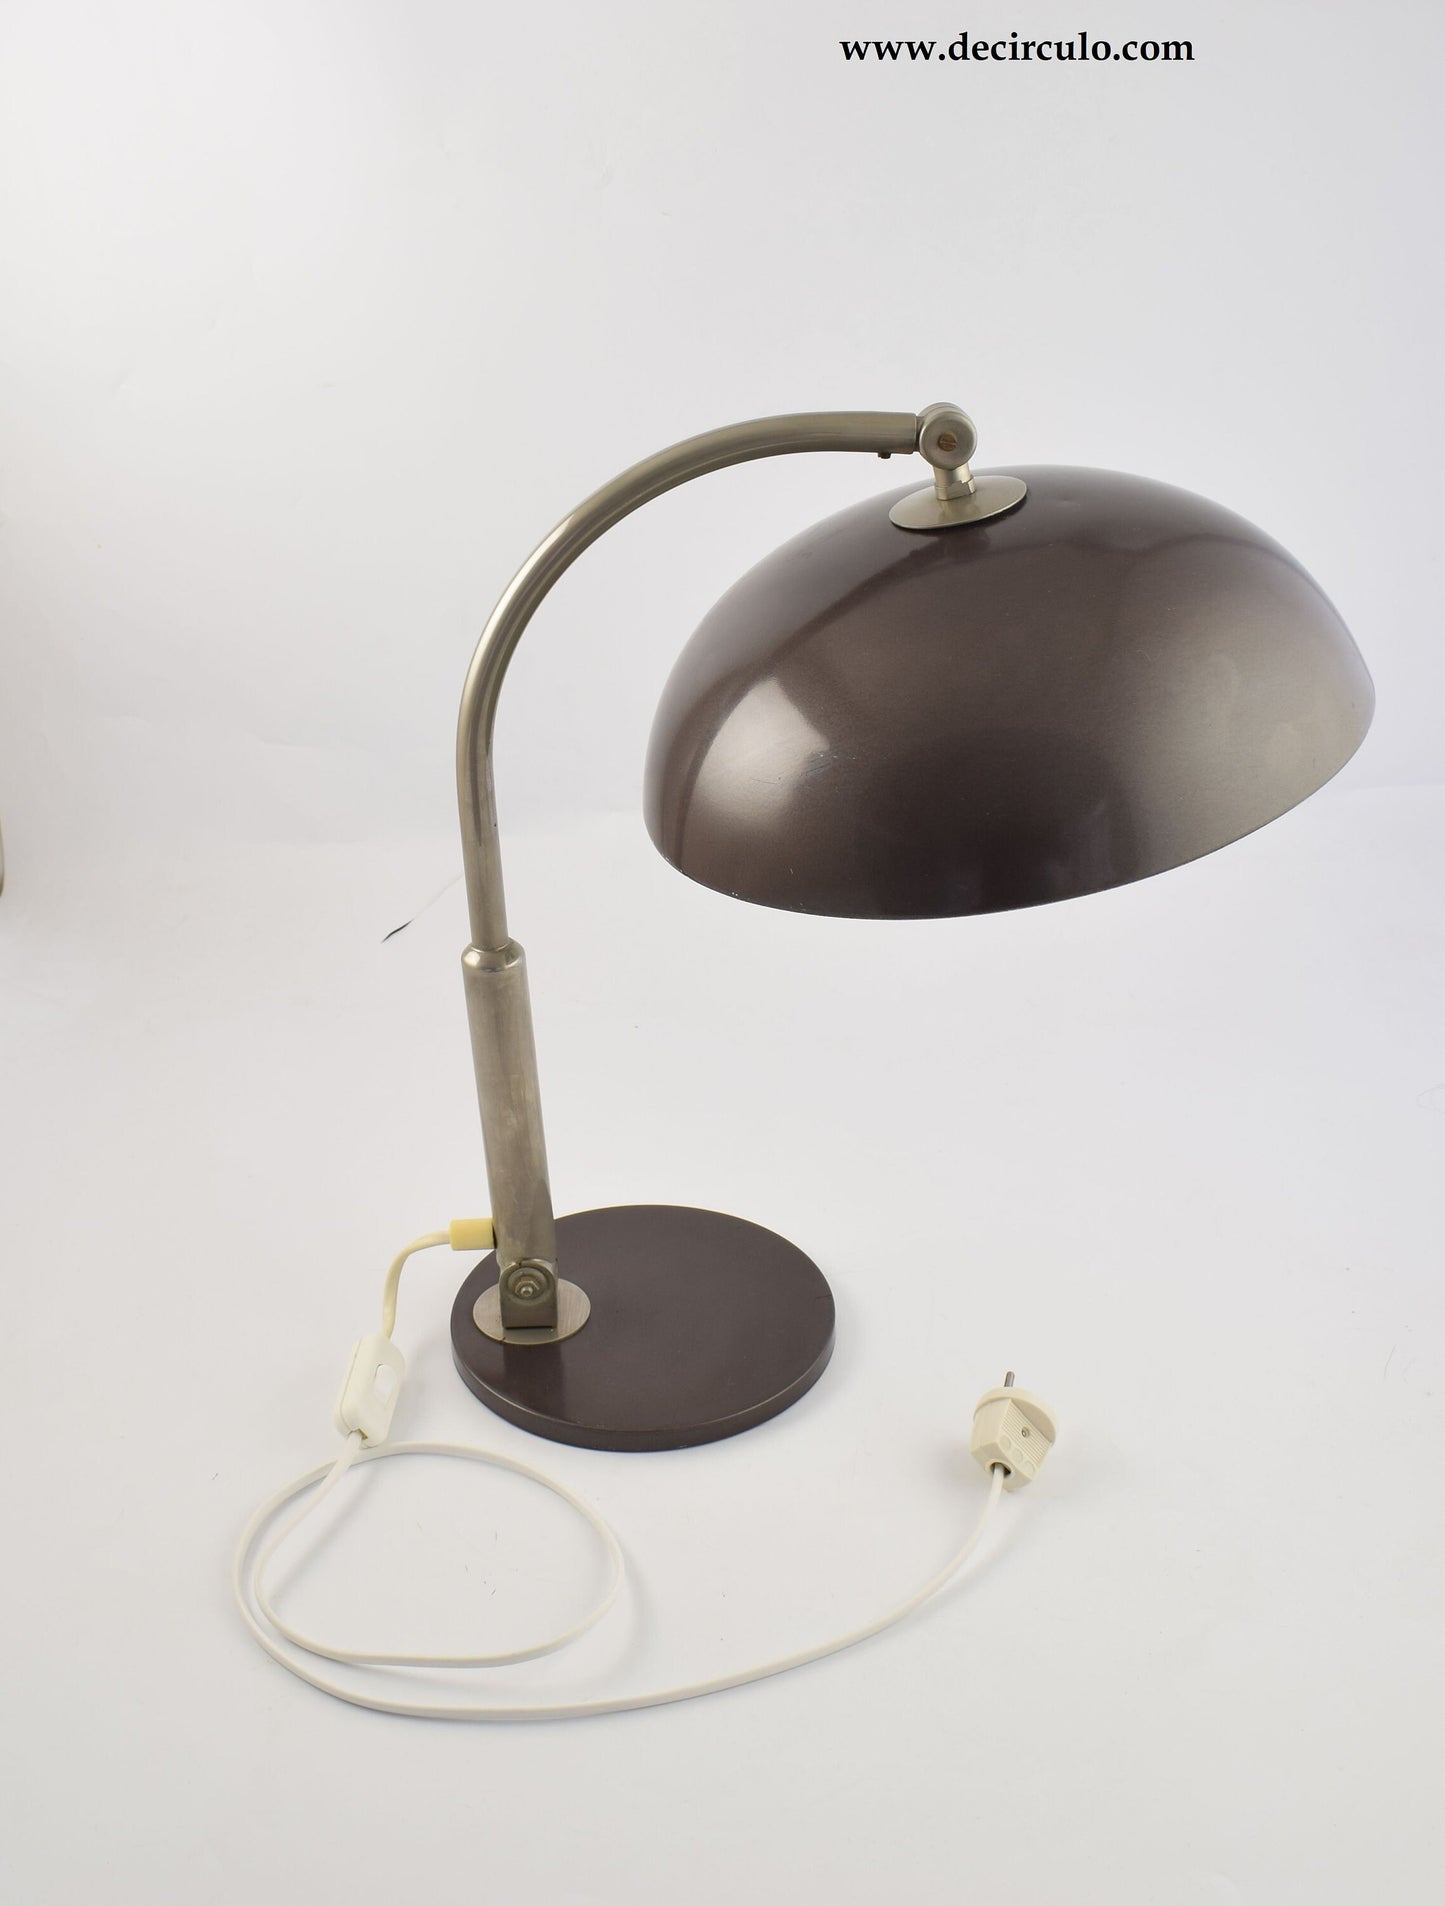 Lámpara de escritorio Hala Modelo 144 diseñada por Busquet, famosa lámpara de mesa de diseño cromado y marrón grisáceo oscuro procedente de los Países Bajos